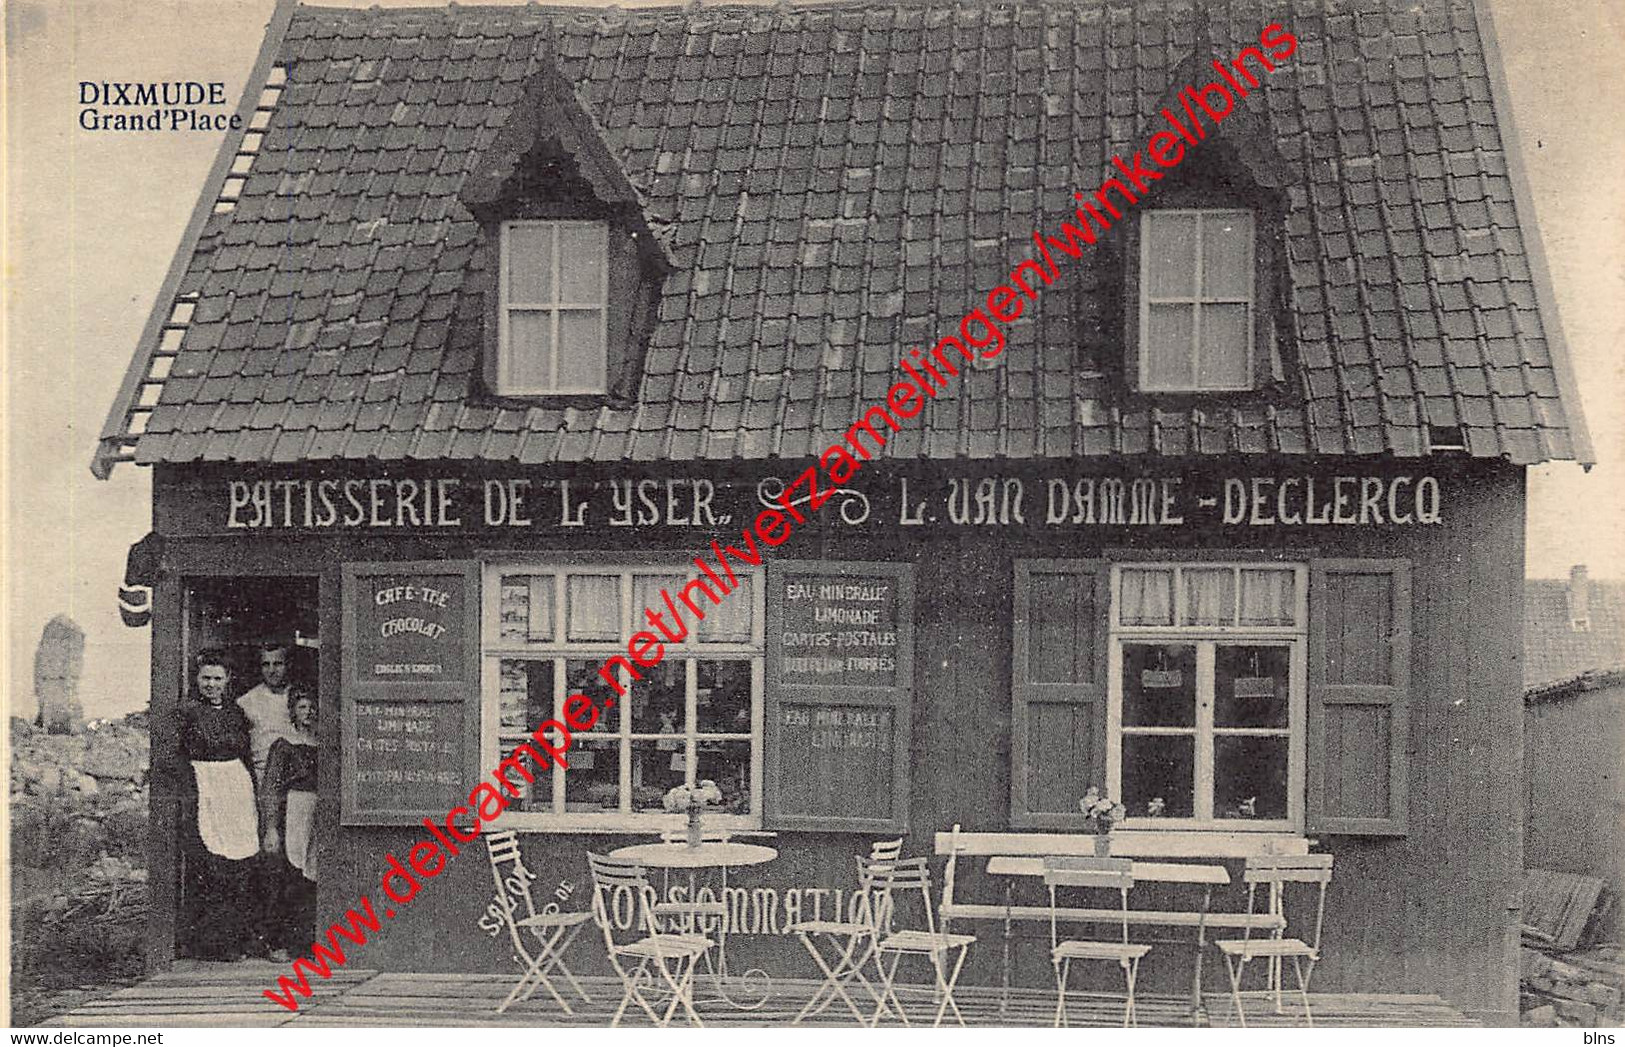 Dixmude - Grand'Place - Patisserie De L'Yser L. Van Damme - Declercq - Diksmuide - Diksmuide